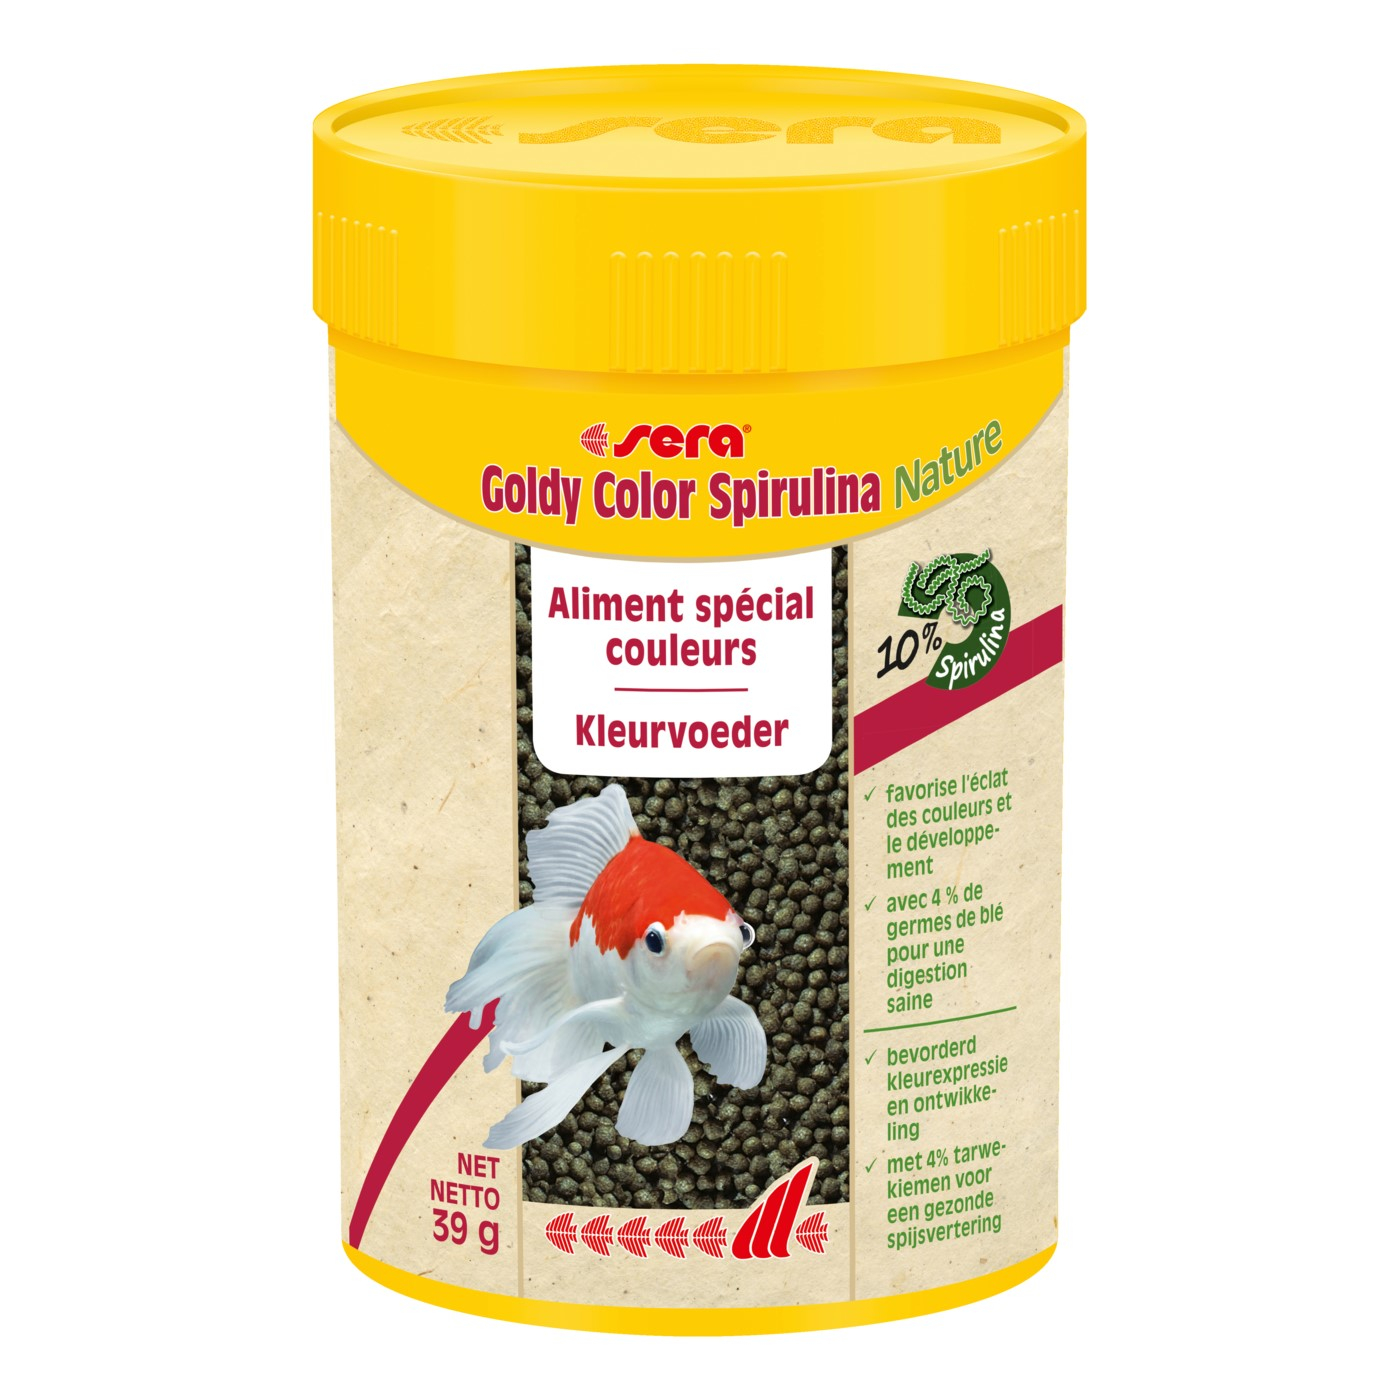 Granulado Goldy Color Spirulina para as cores dos peixes vermelhos